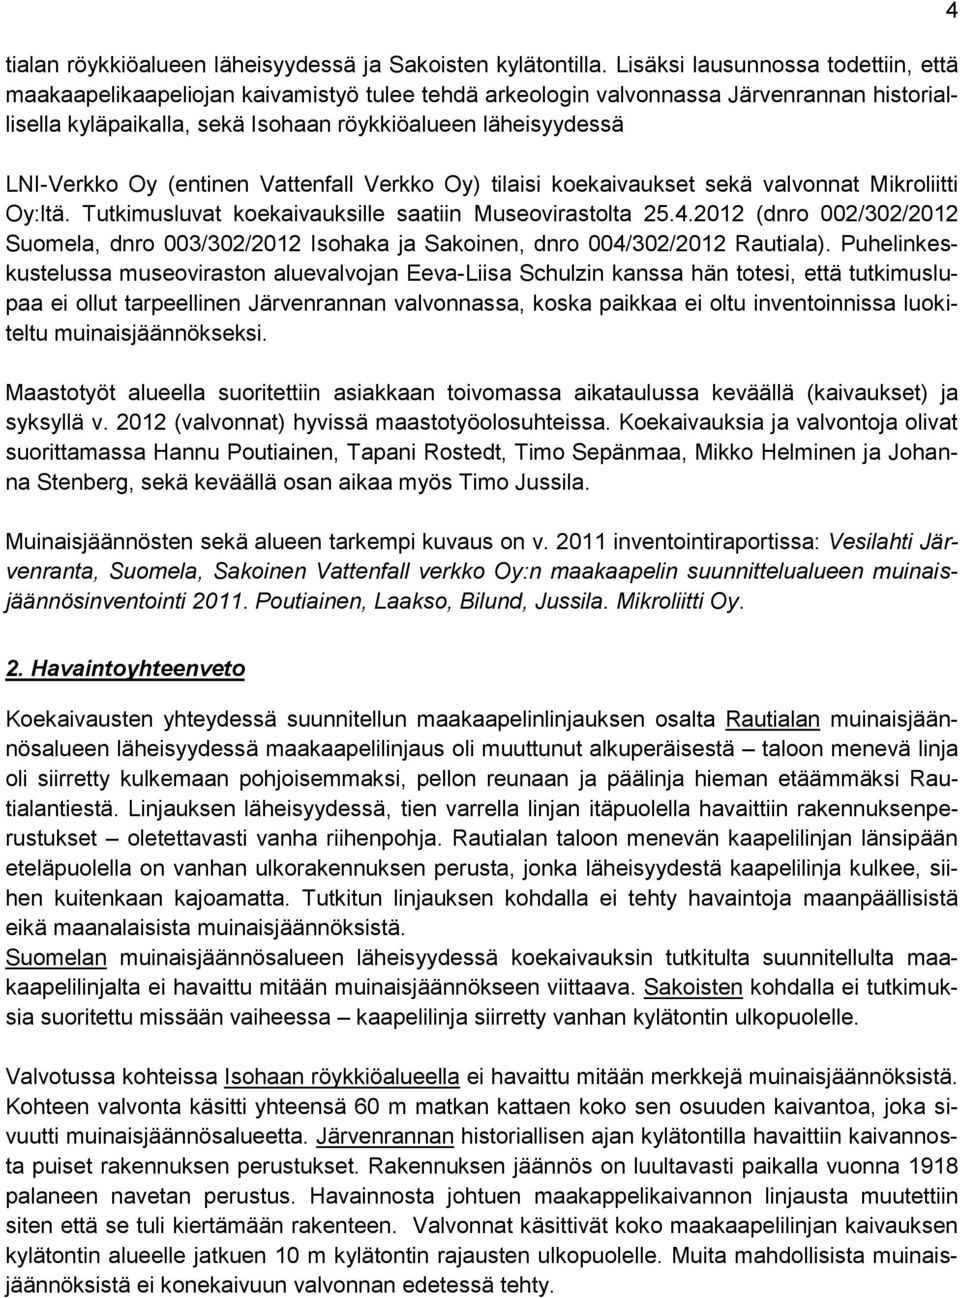 LNI-Verkko Oy (entinen Vattenfall Verkko Oy) tilaisi koekaivaukset sekä valvonnat Mikroliitti Oy:ltä. Tutkimusluvat koekaivauksille saatiin Museovirastolta 25.4.